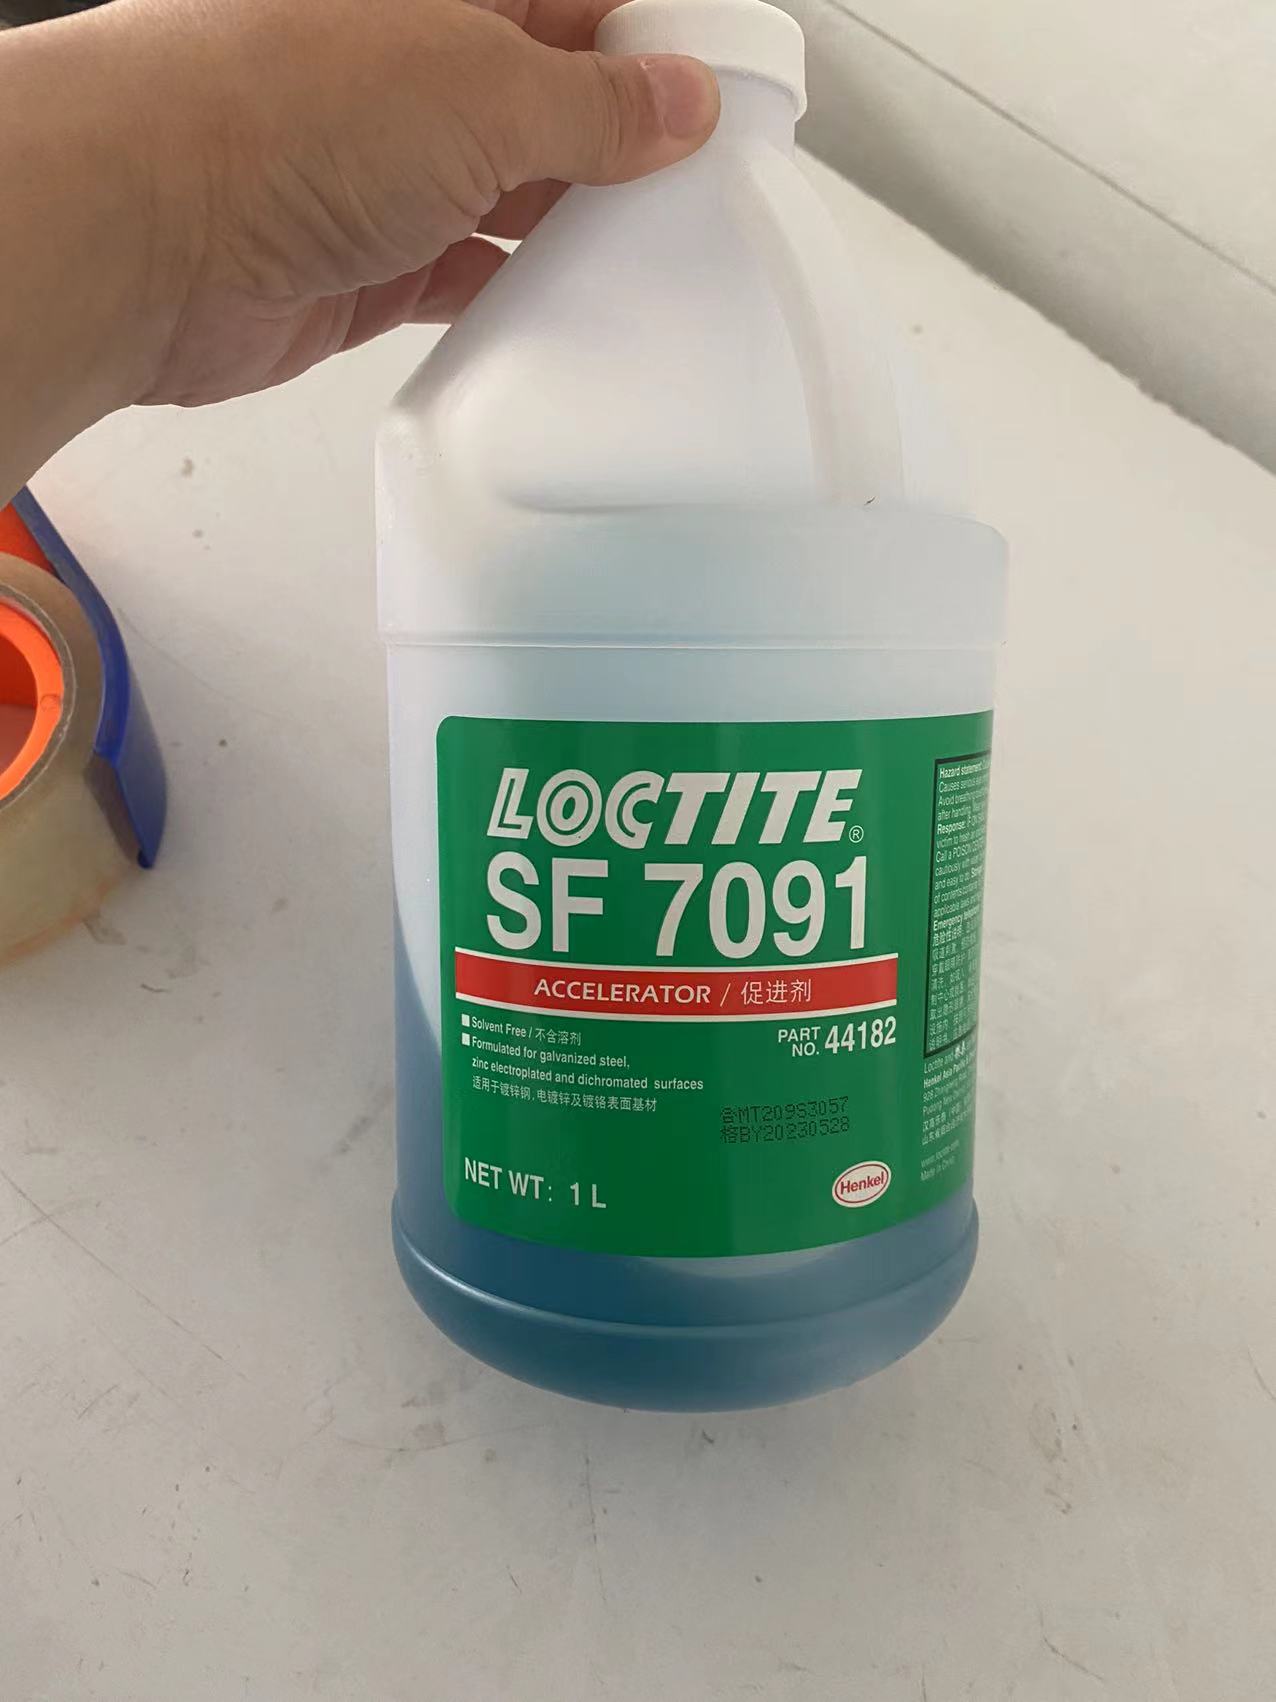    汉高乐泰SF7091液低温固化活化剂 蓝绿色 无溶剂 催化促进剂 底剂